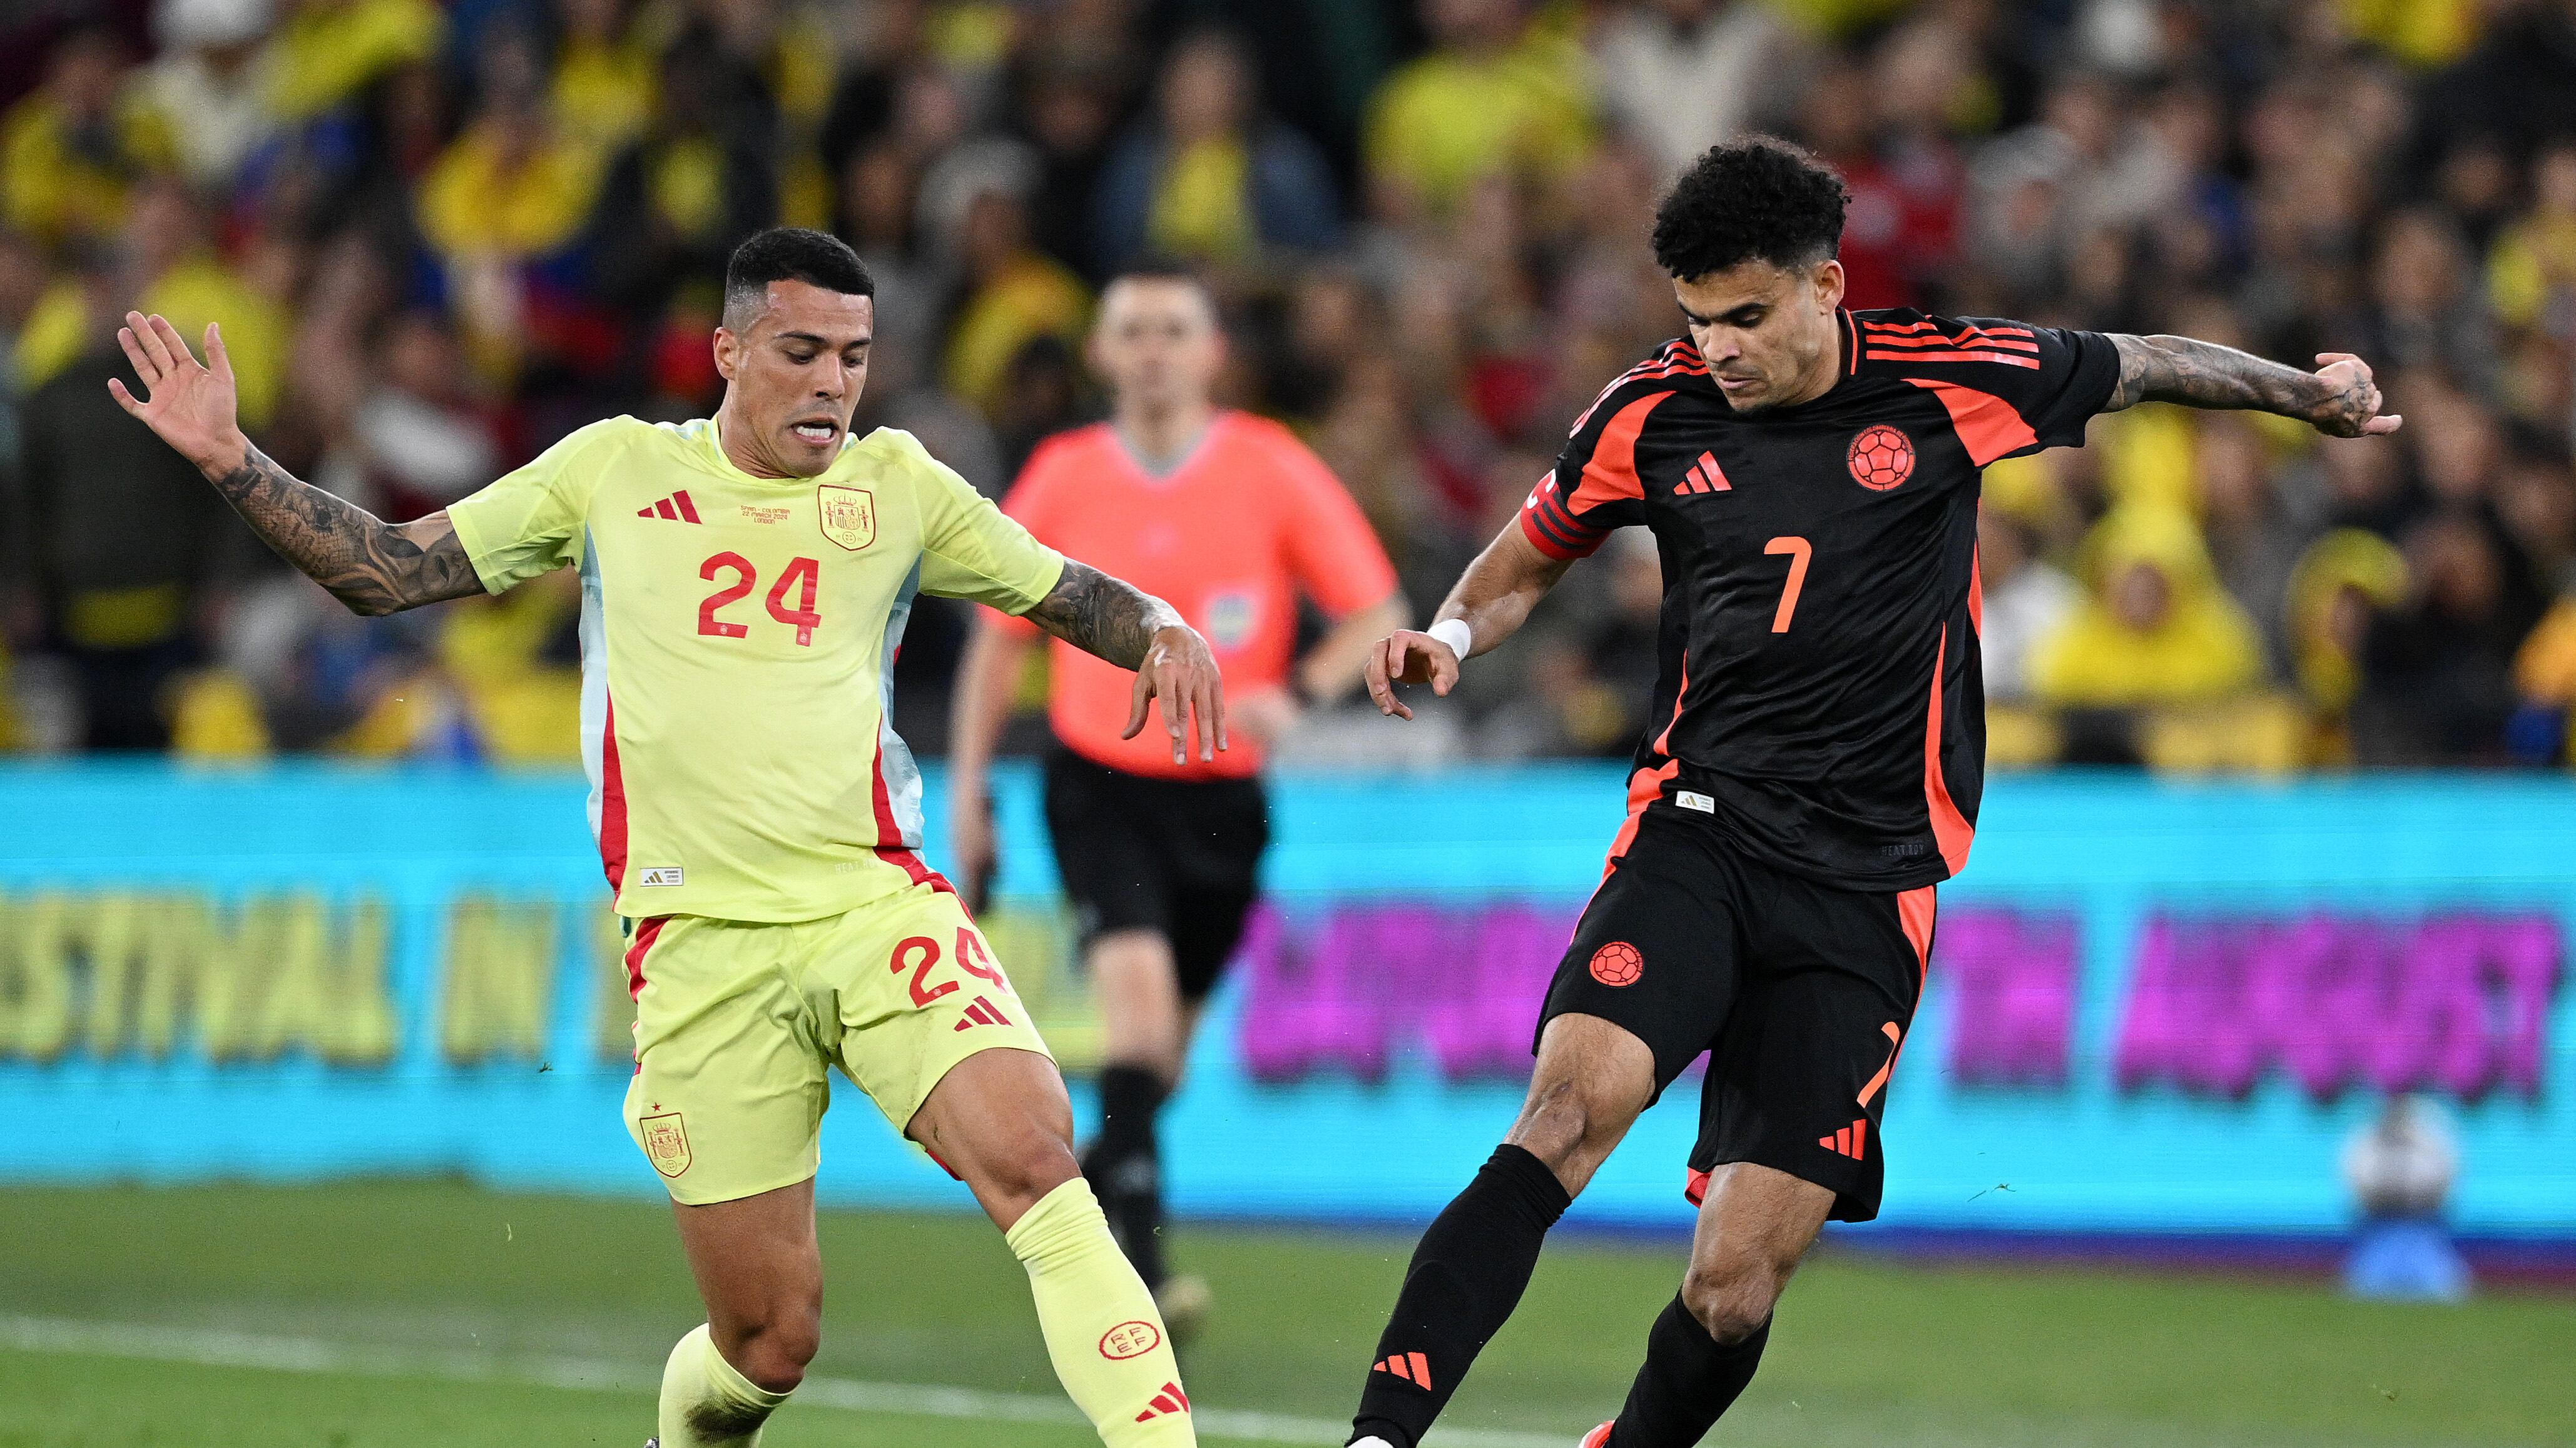 Vea el gol de Daniel Muñoz tras la jugada de Luis Díaz hoy en Colombia vs España